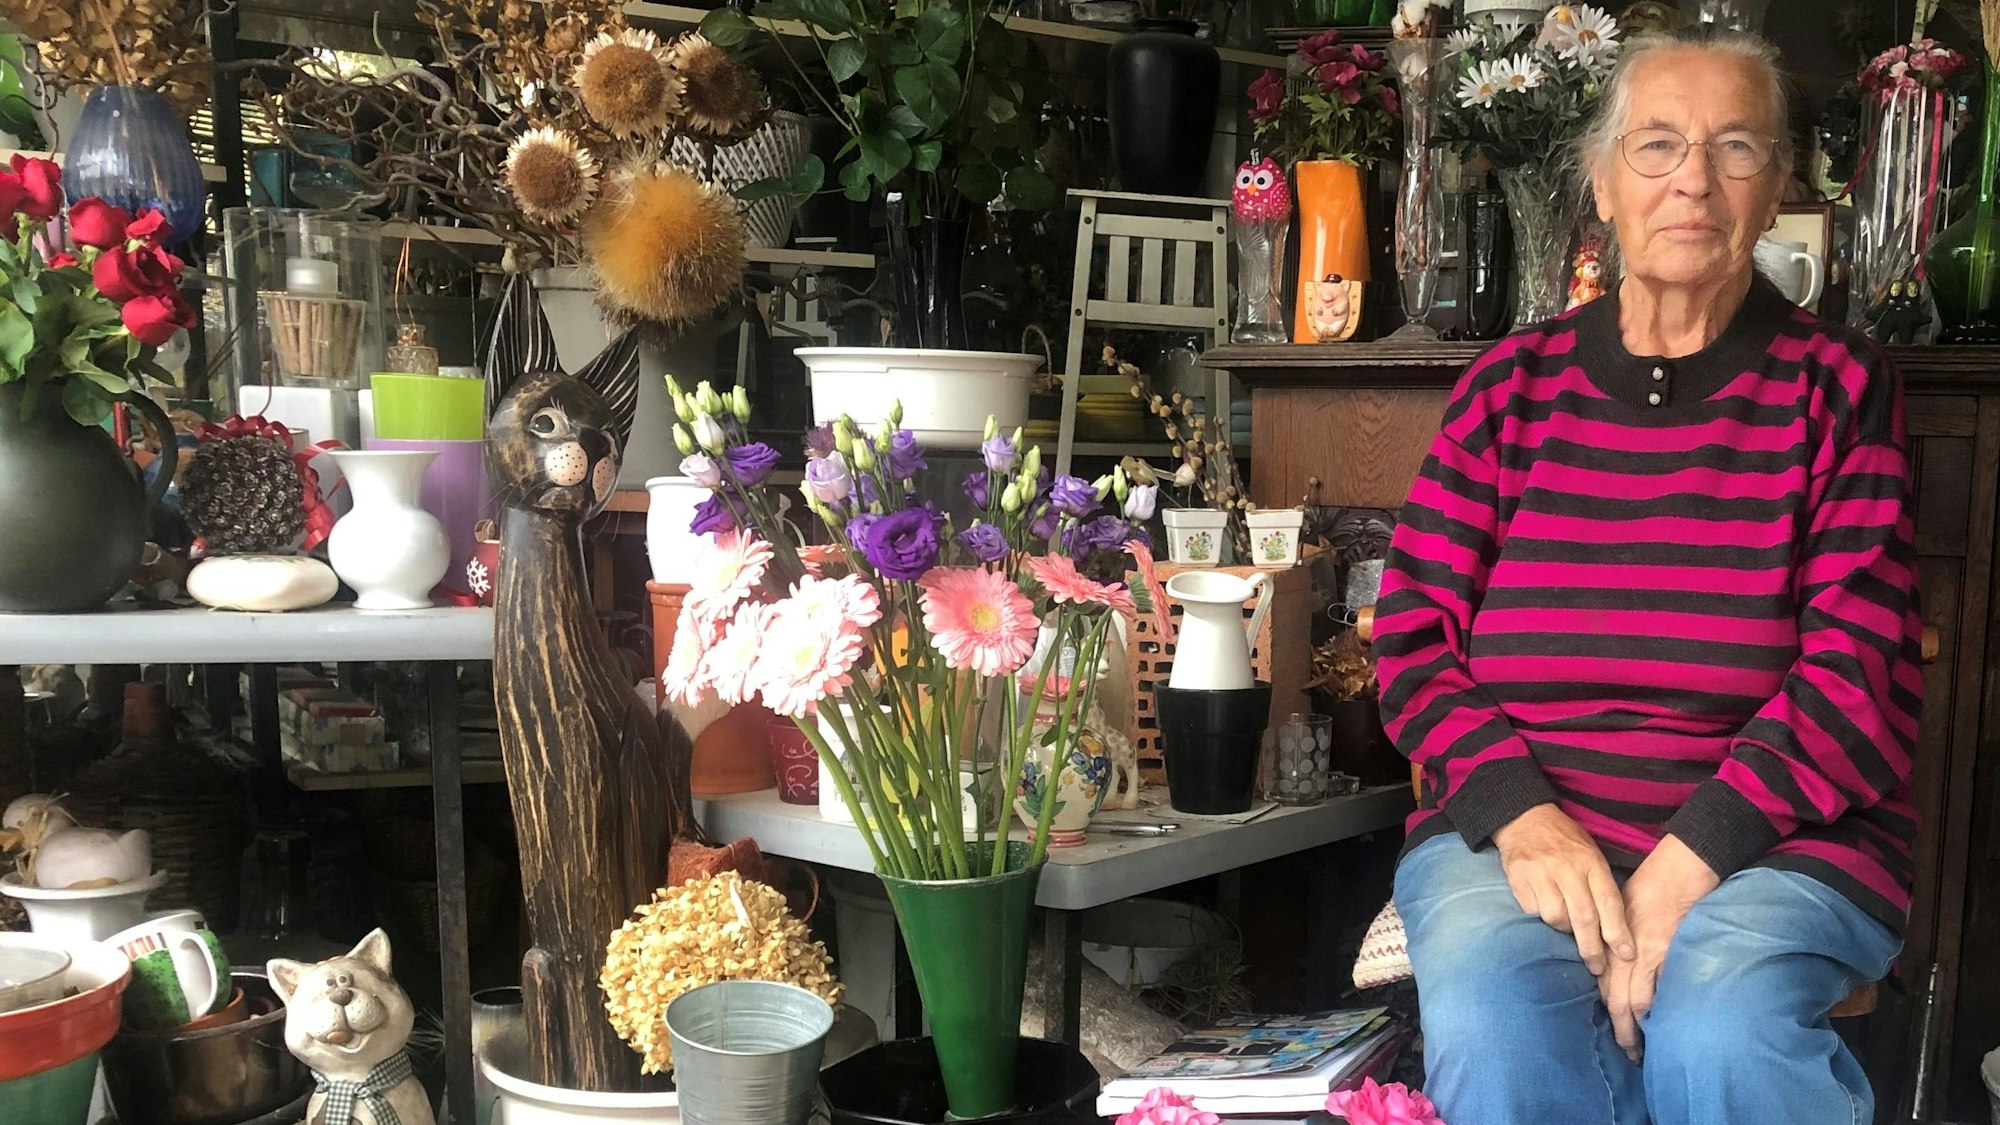 Eine alte Frau im Ringelpulli sitzt in einem Blumenladen